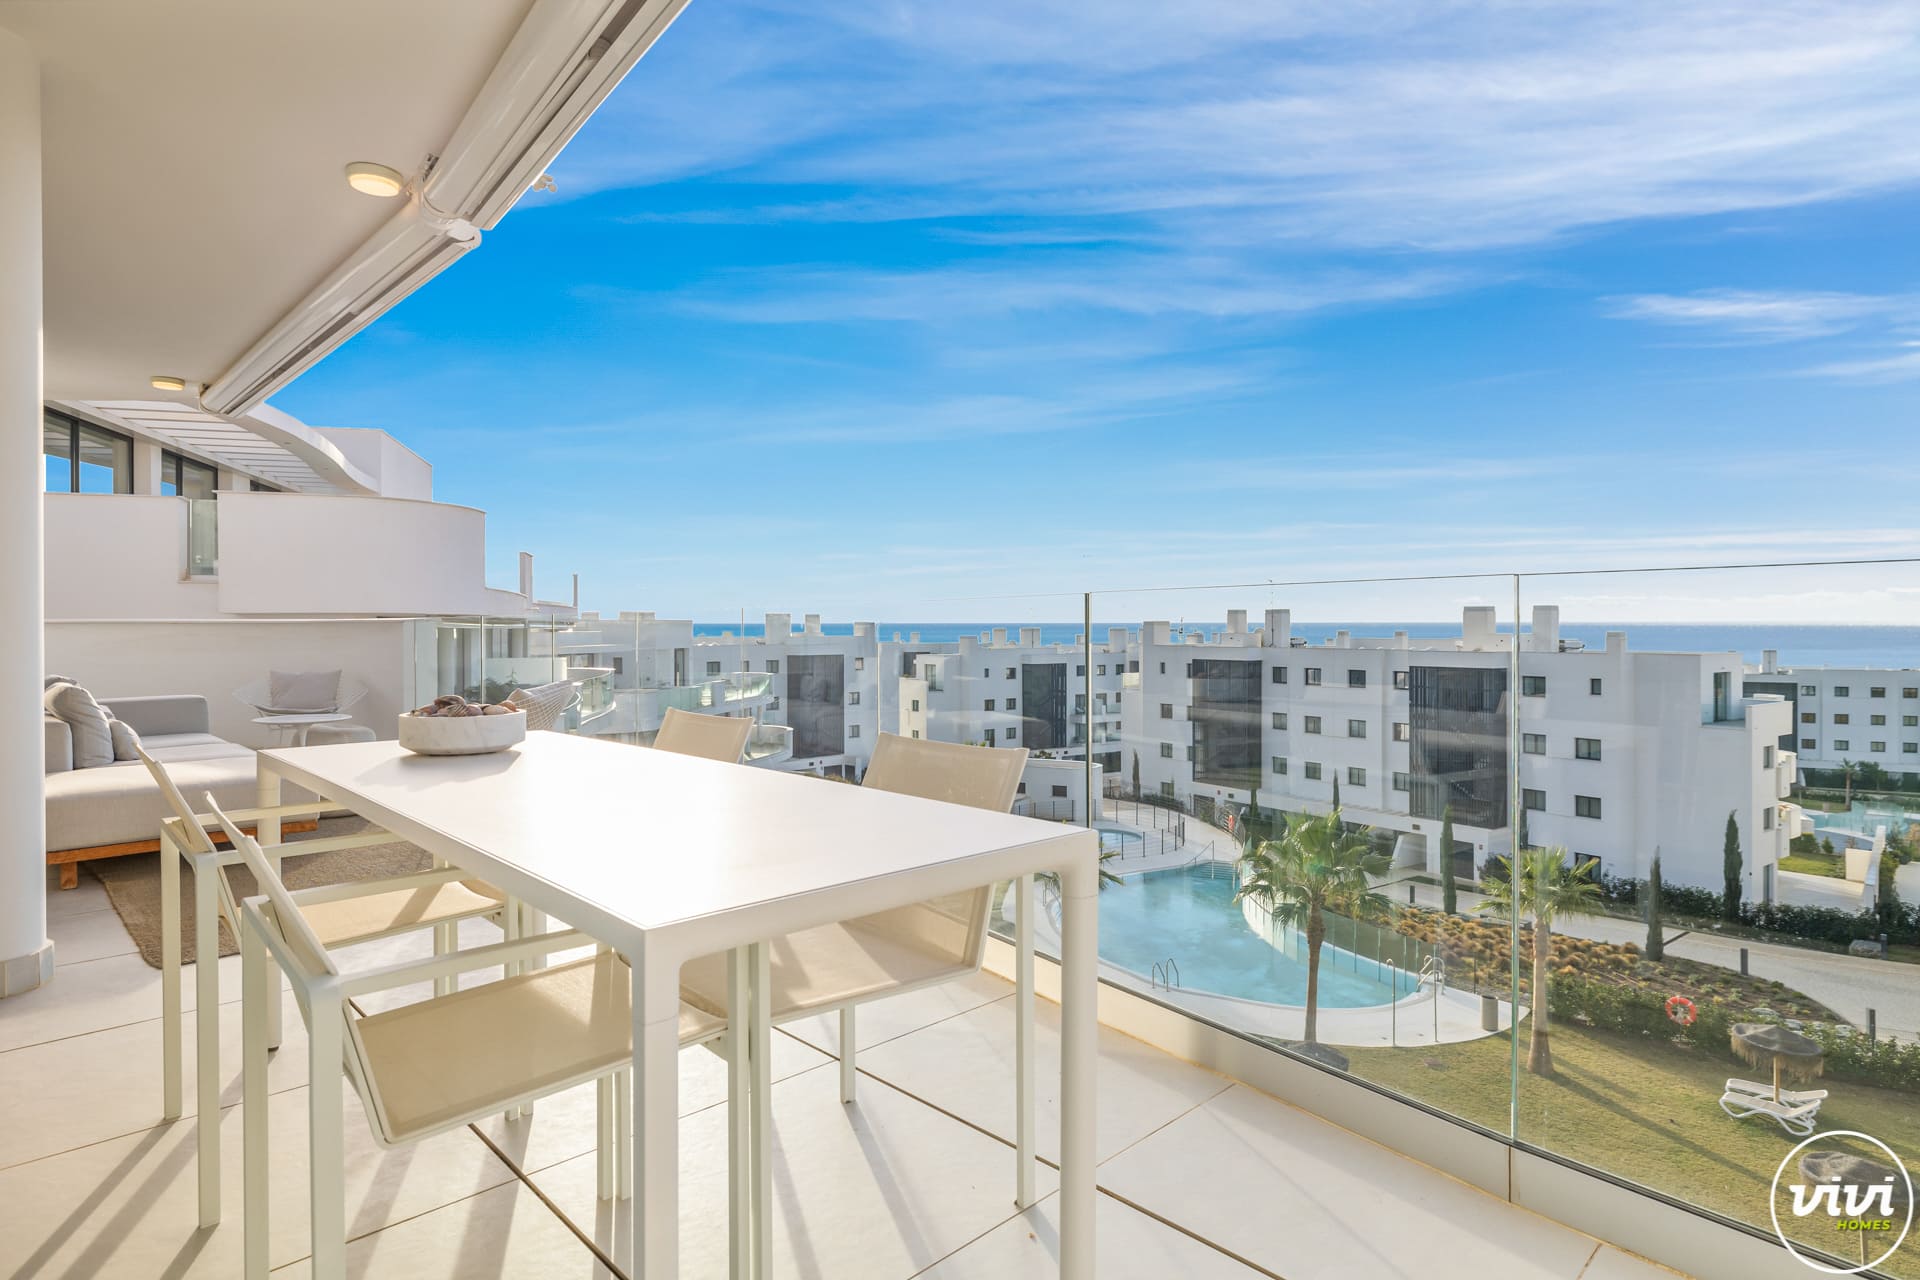 ViVi Real Estate: Nowoczesny apartament na środkowym piętrze z balkonem z widokiem na ocean.